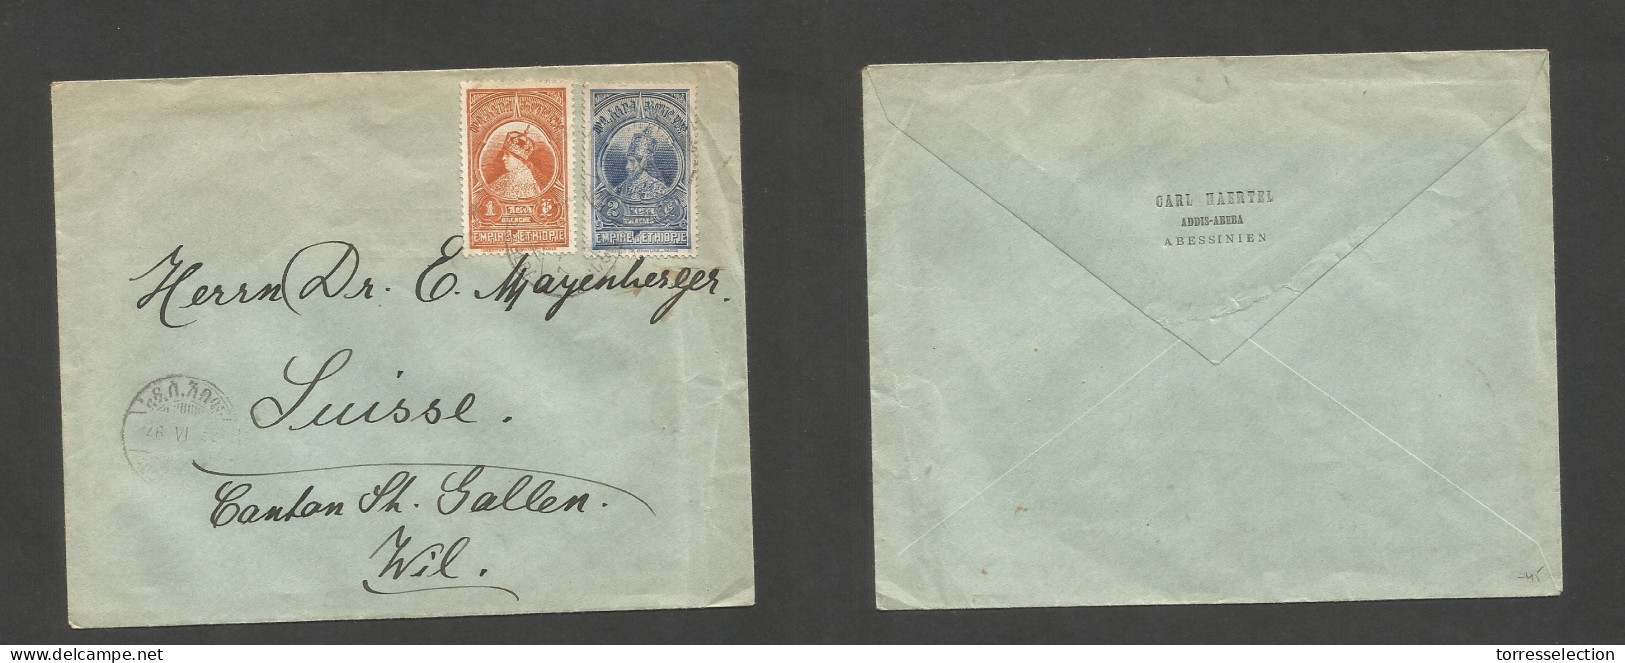 ETHIOPIA. 1932 (26 June) Addis Abeba - Switzerland, Will, St. Gullen. Multifkd Env At 3 Querches Rate, Tied Cds. Reverse - Etiopía